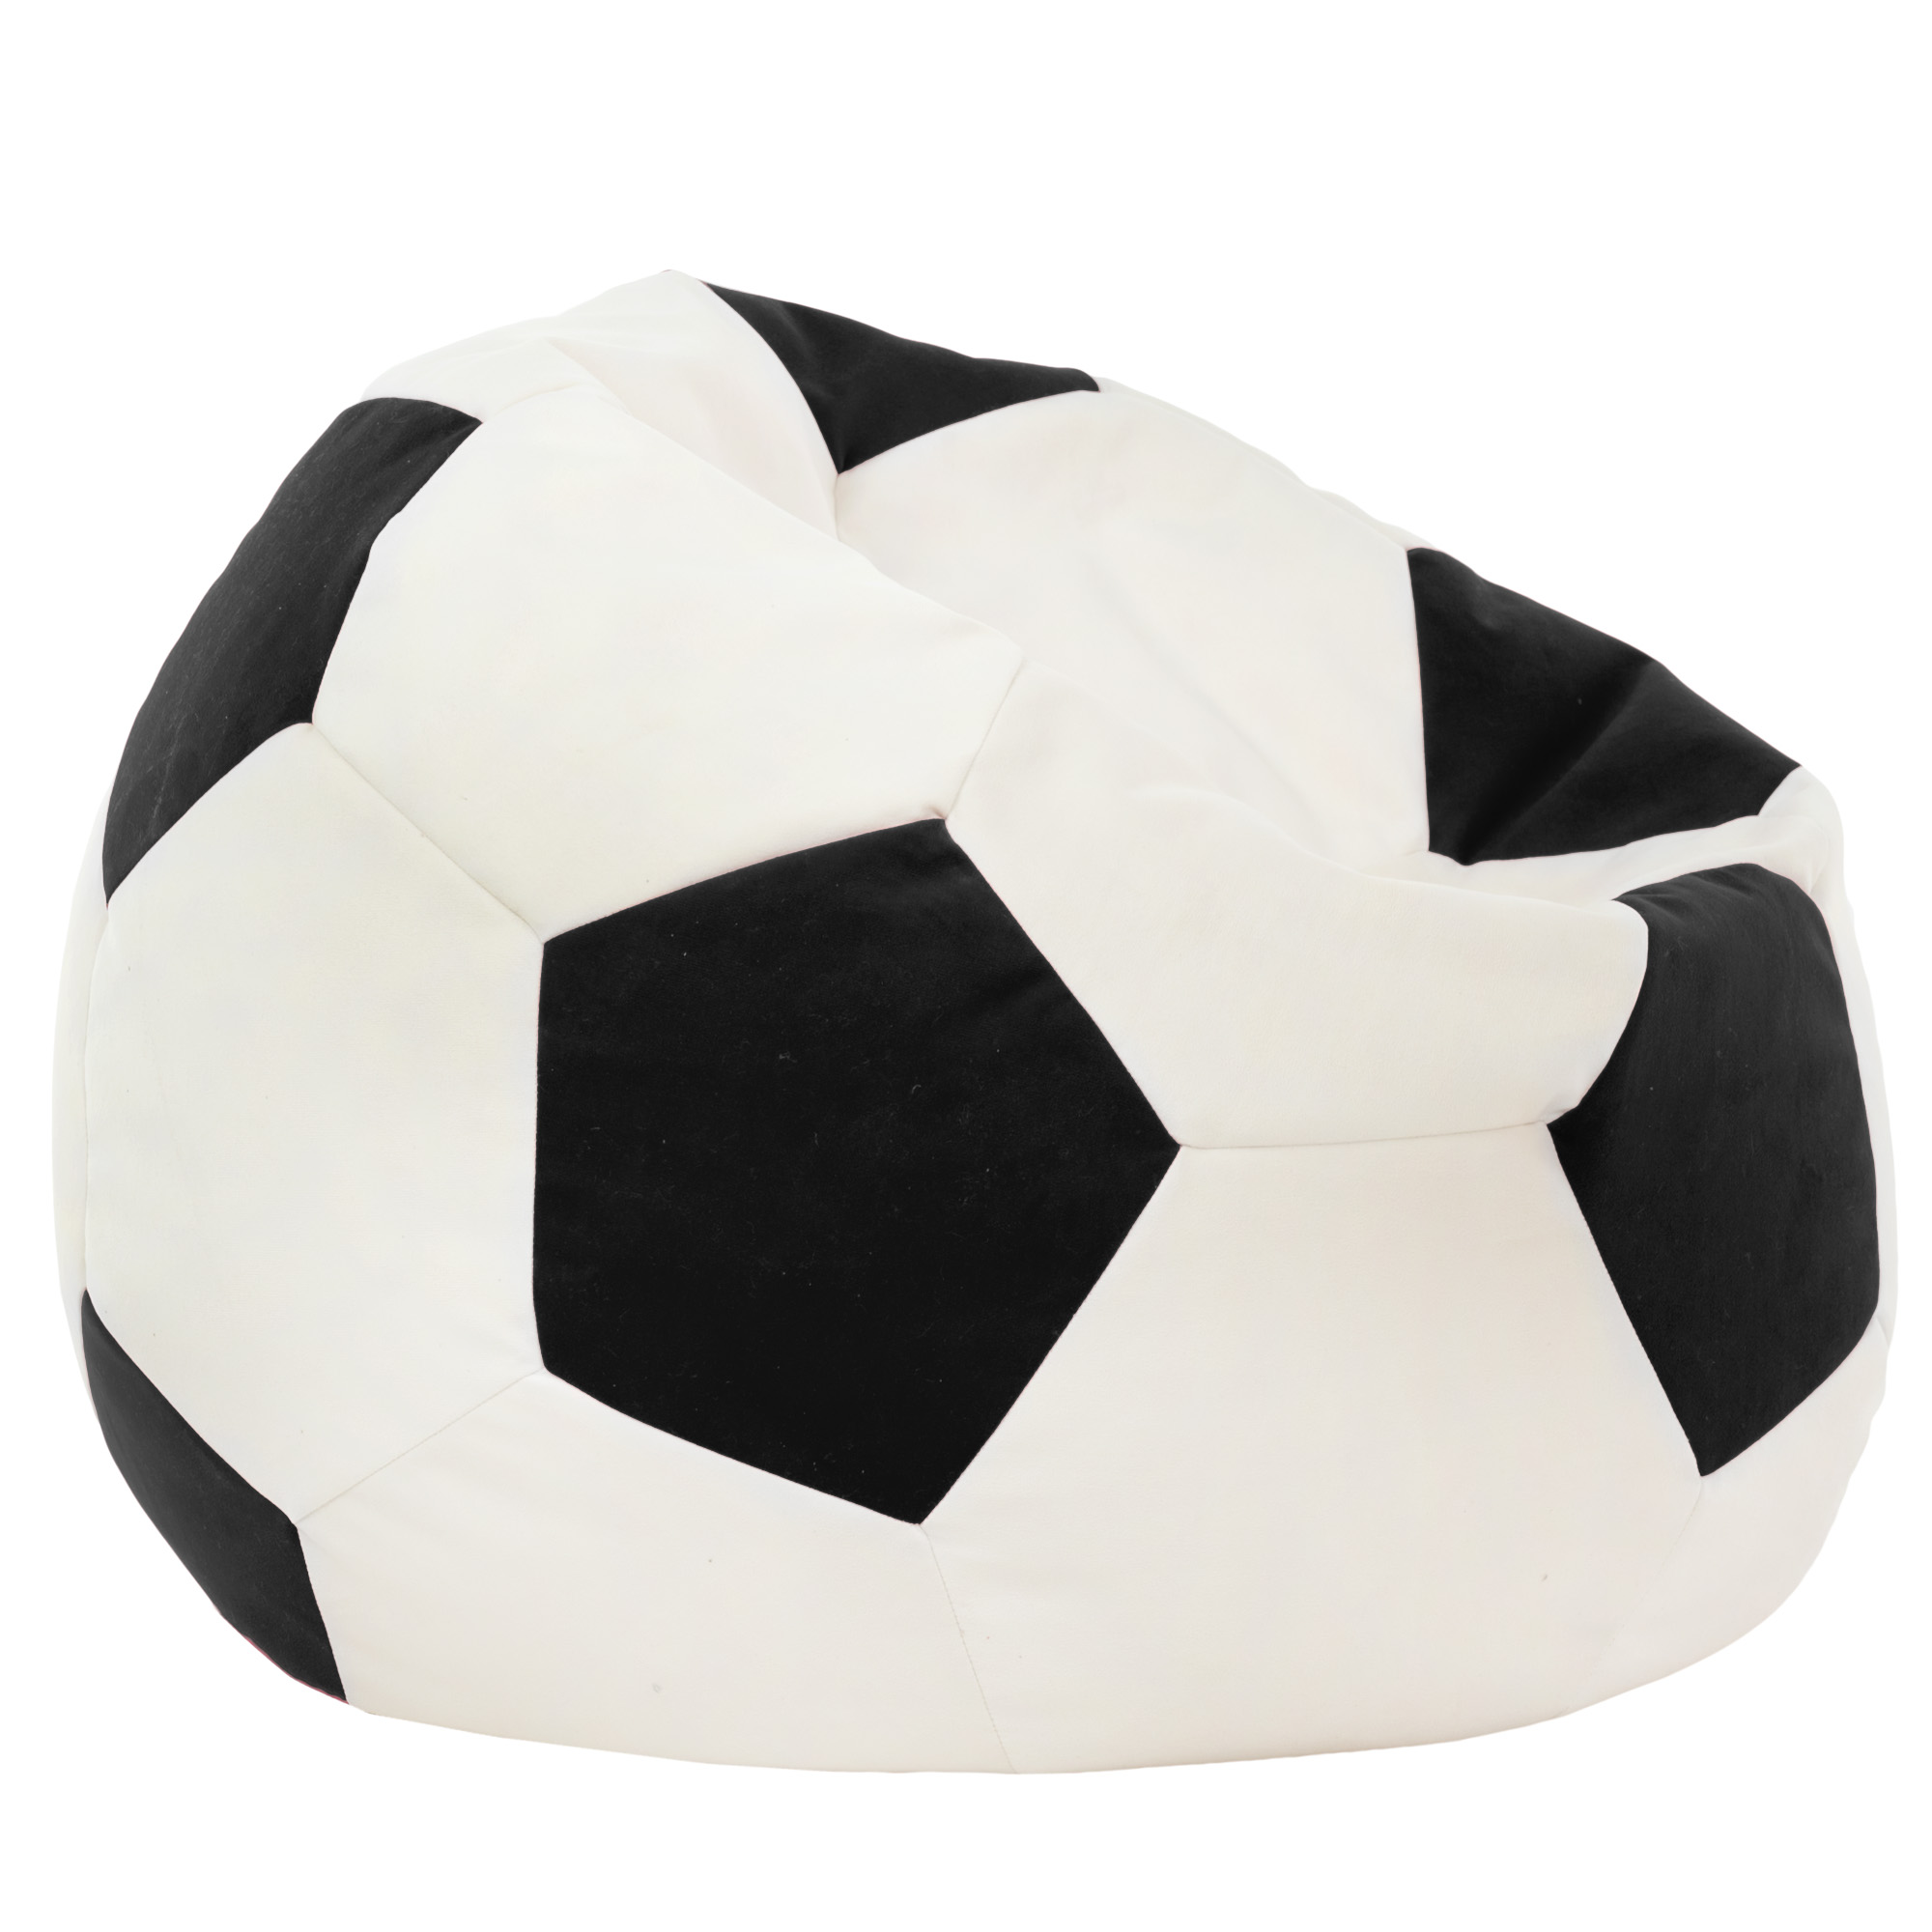 Ballon football en polystyrène